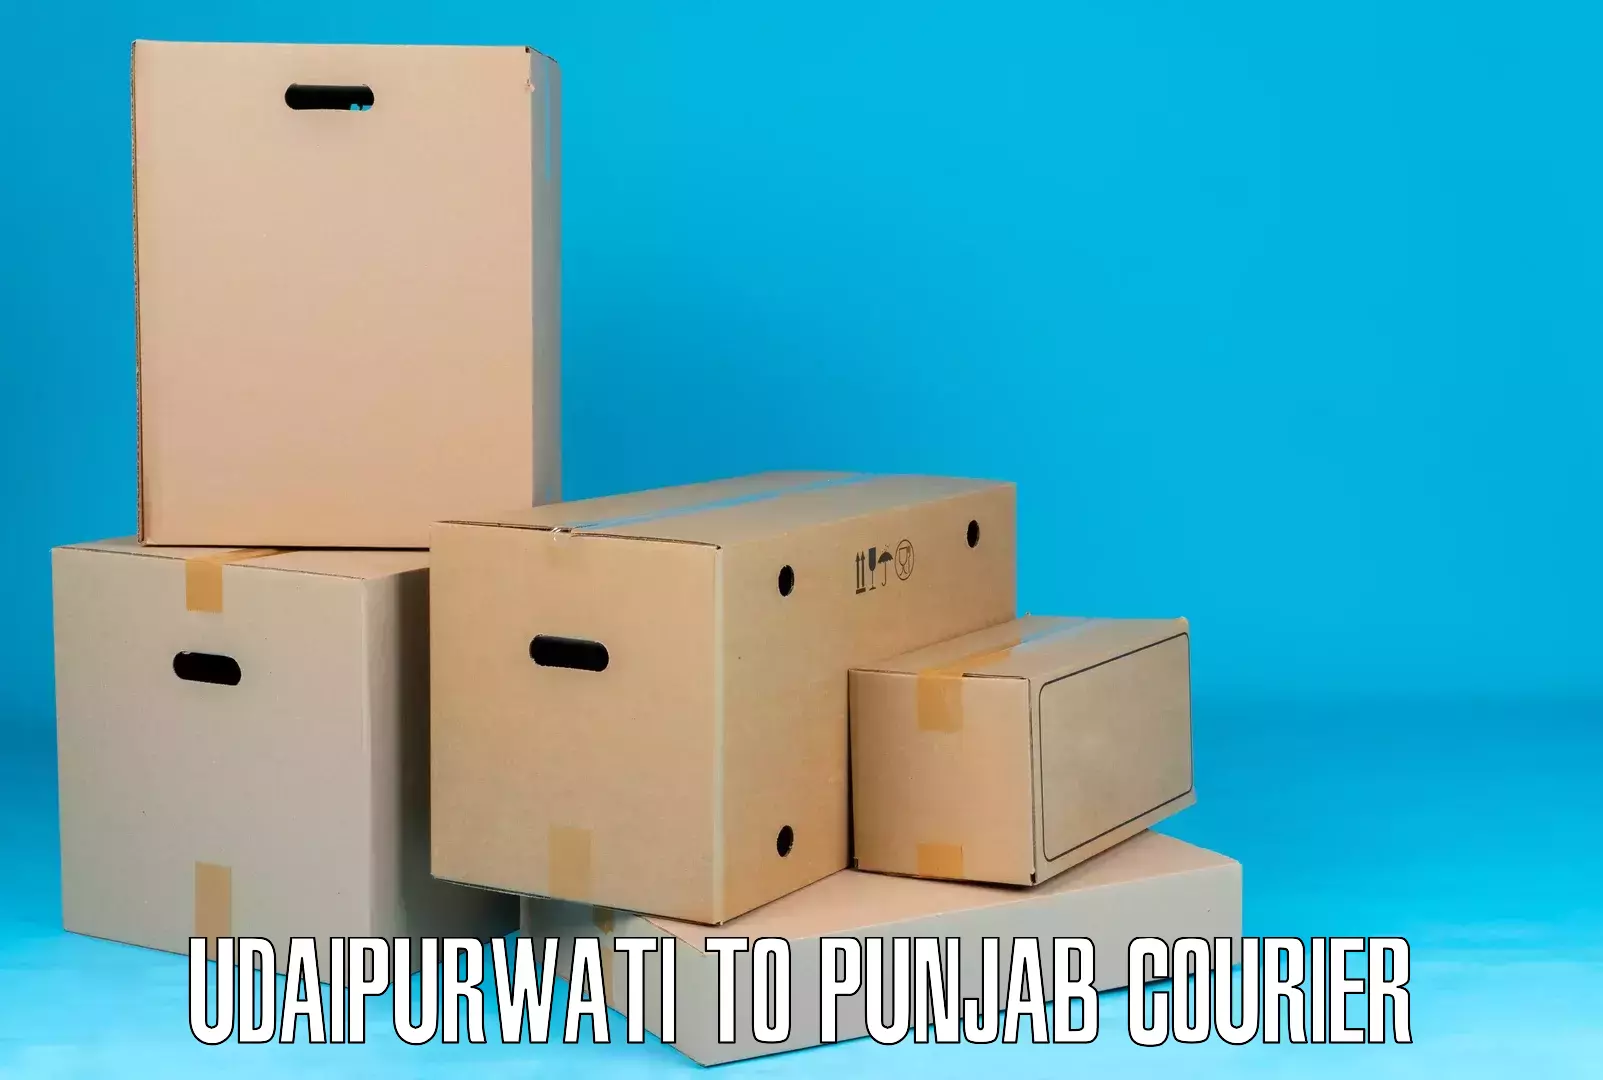 Efficient order fulfillment Udaipurwati to Gurdaspur